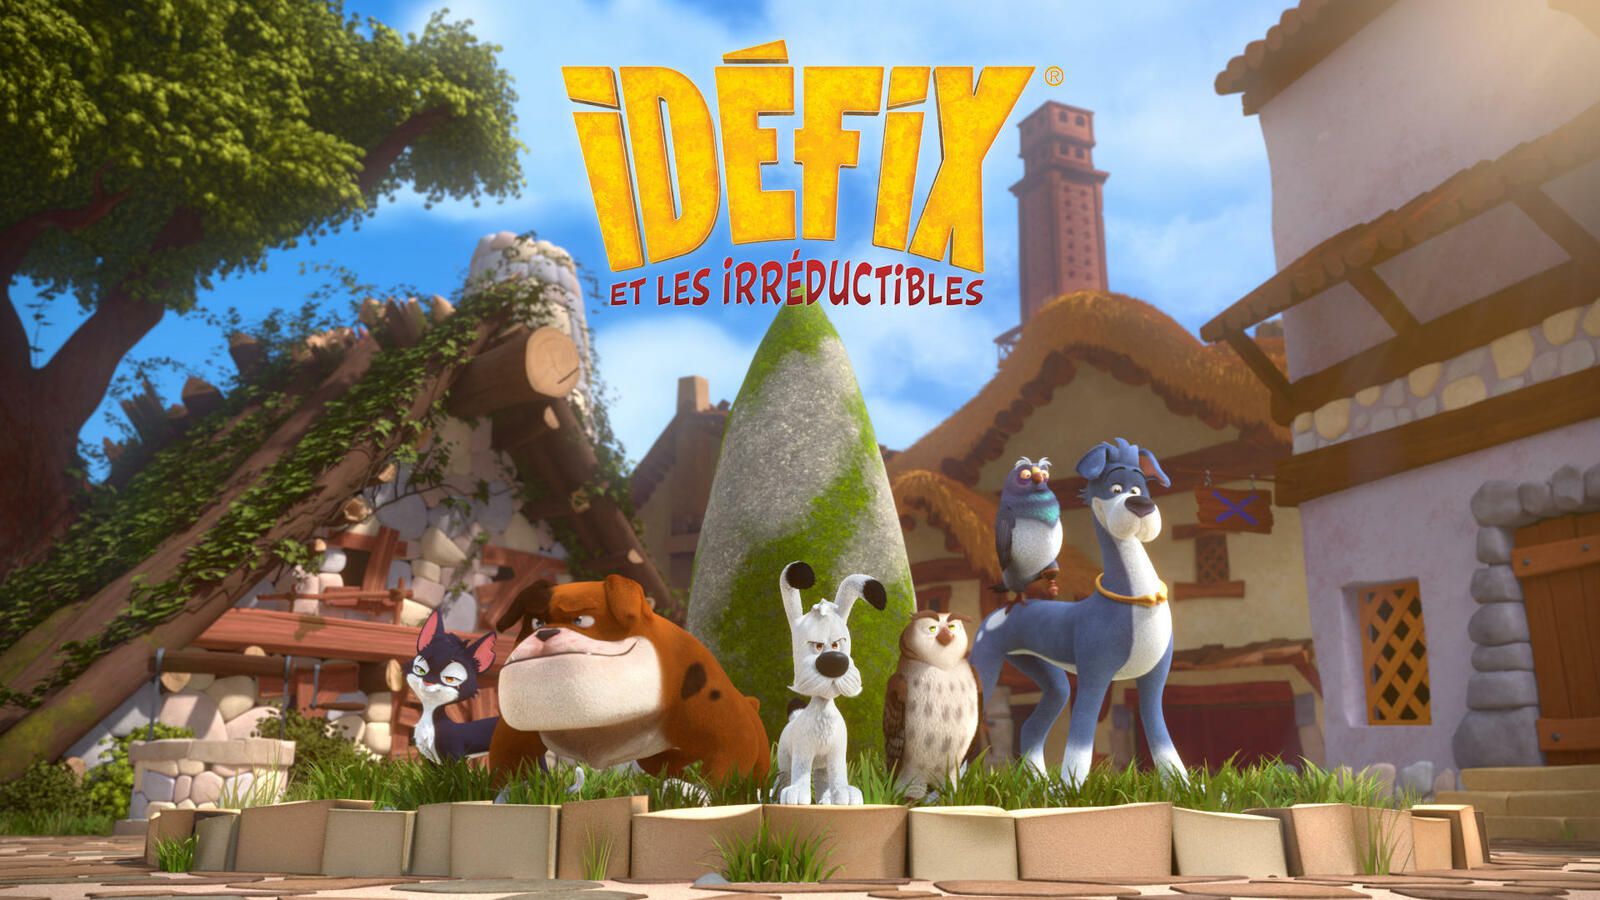 Idefix & les Irréductibles  Image%2F0953084%2F20210623%2Fob_393ff2_idefix-et-les-irreductibles-preview-23